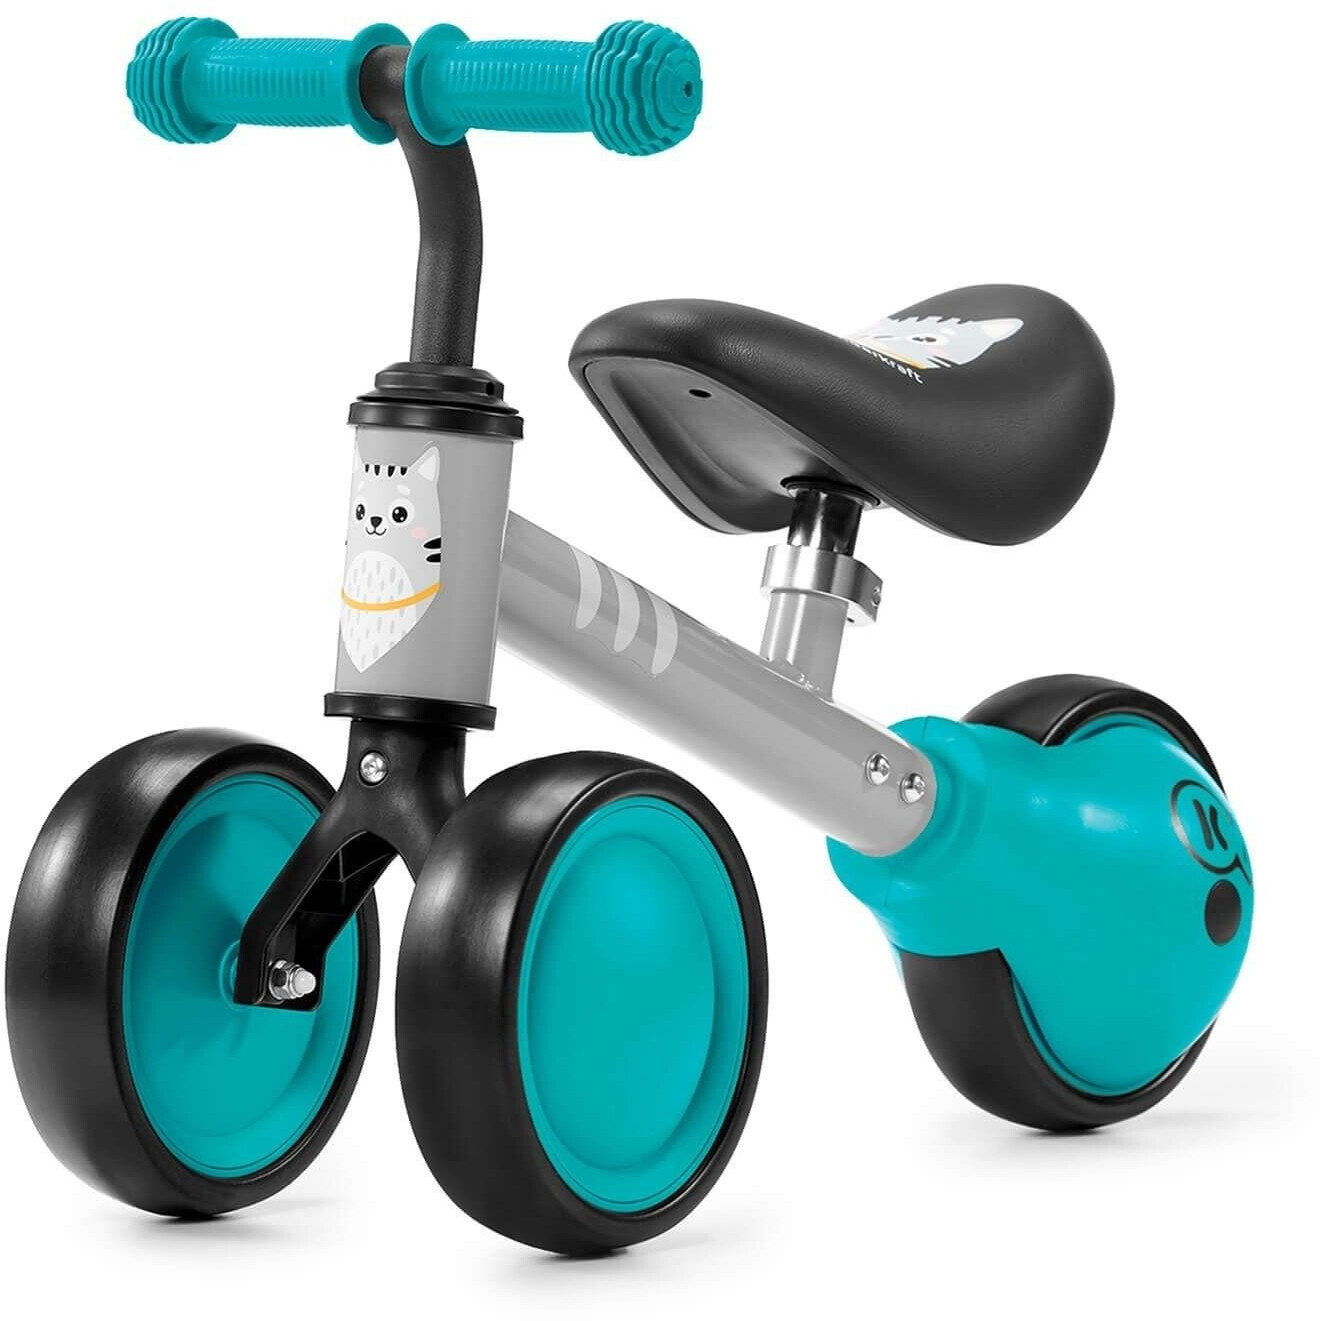 Comprar Triciclo Kinderkraft Cutie a precio de oferta